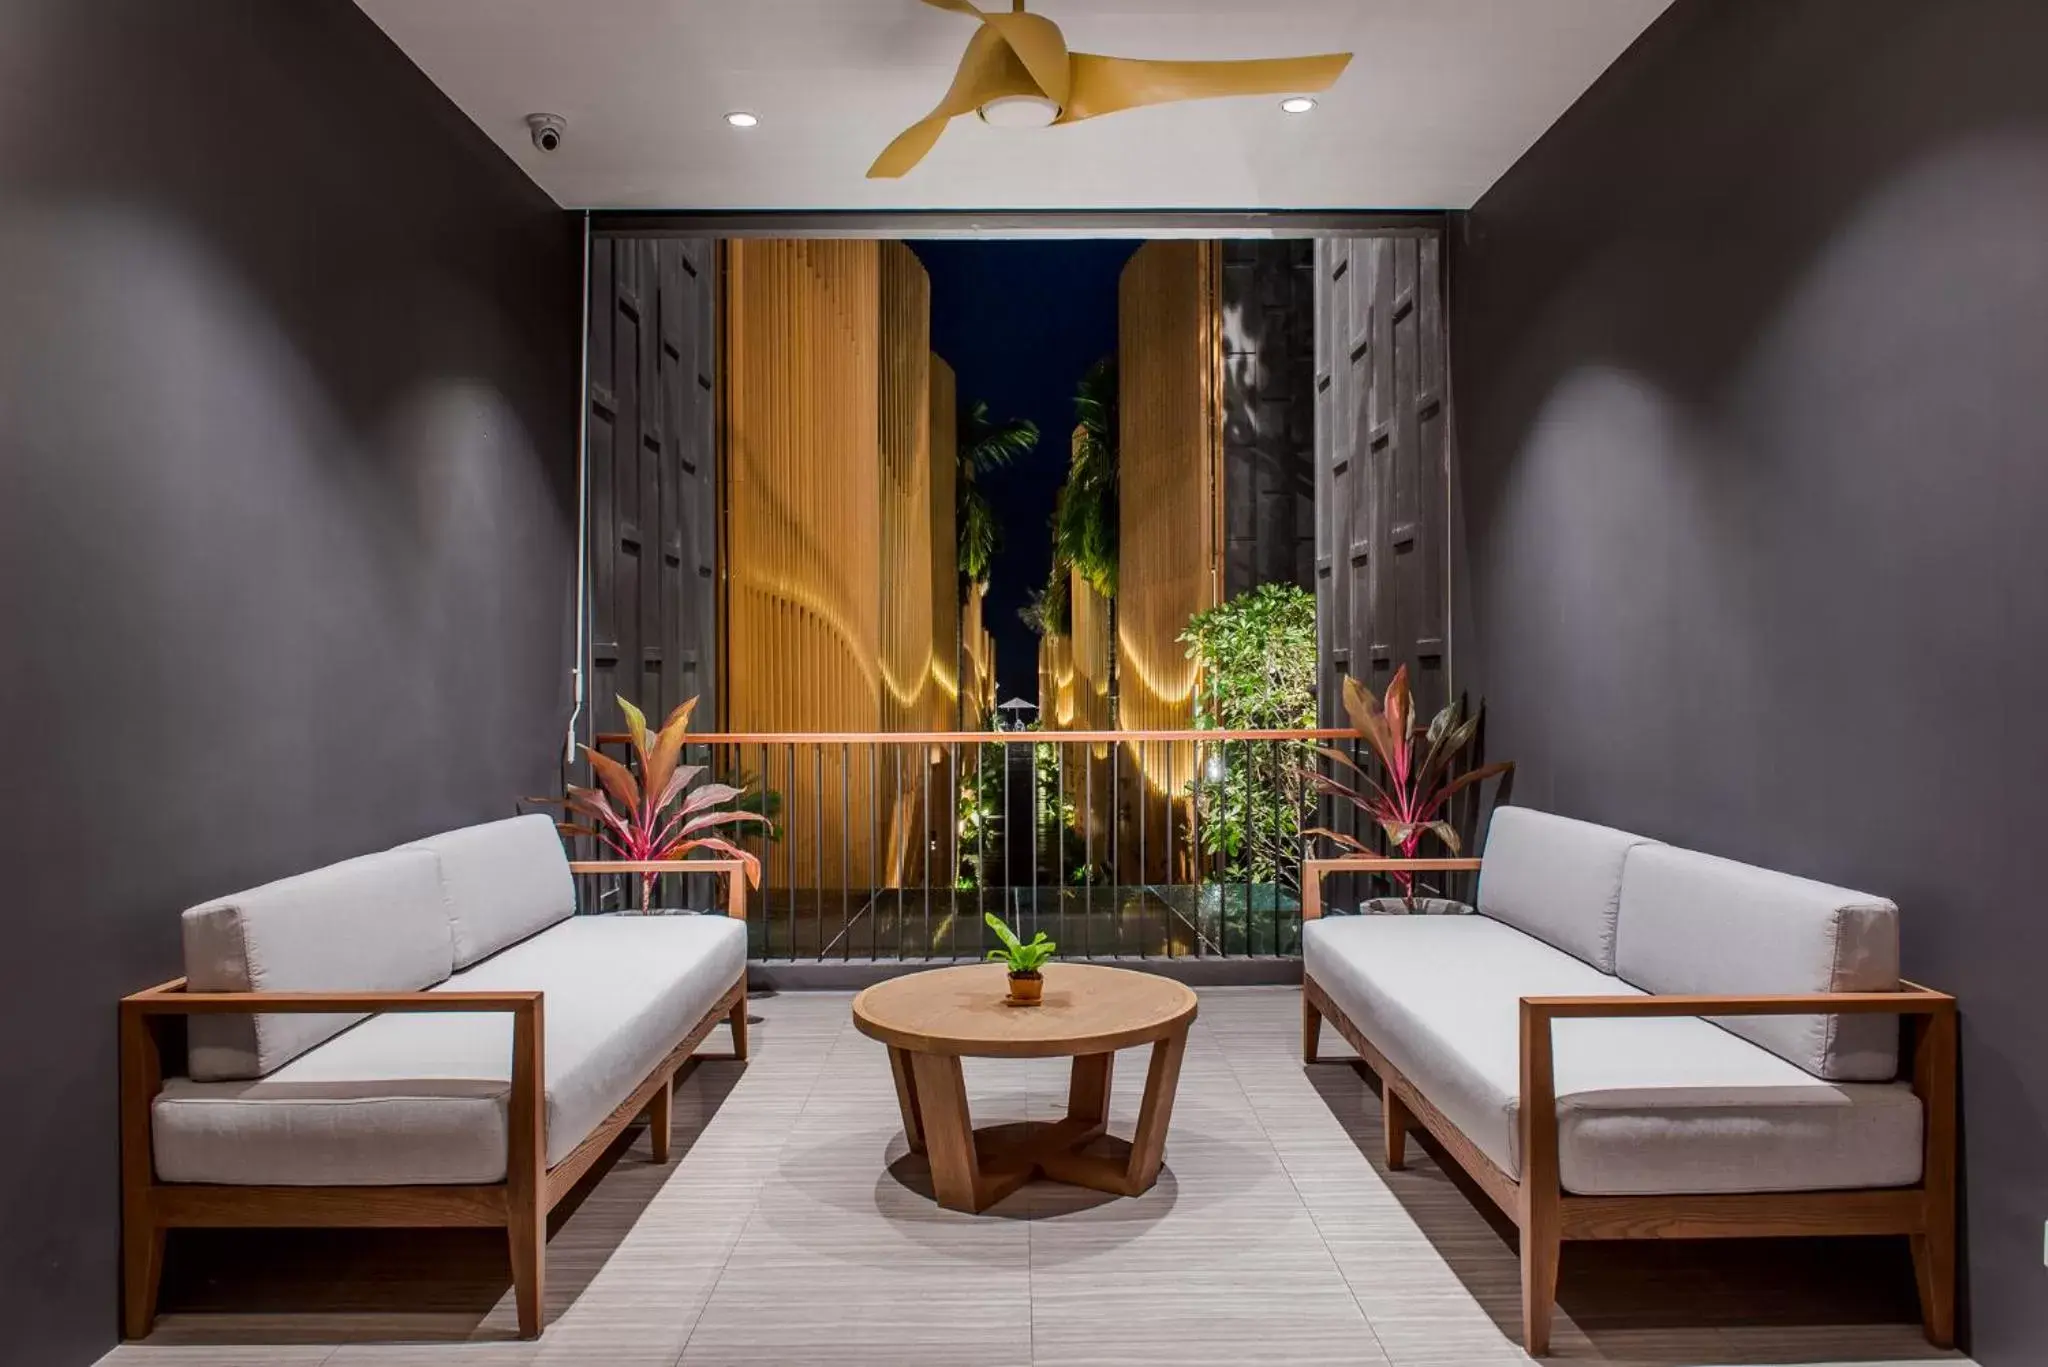 Area and facilities, Lobby/Reception in The Yana Villas Hua Hin